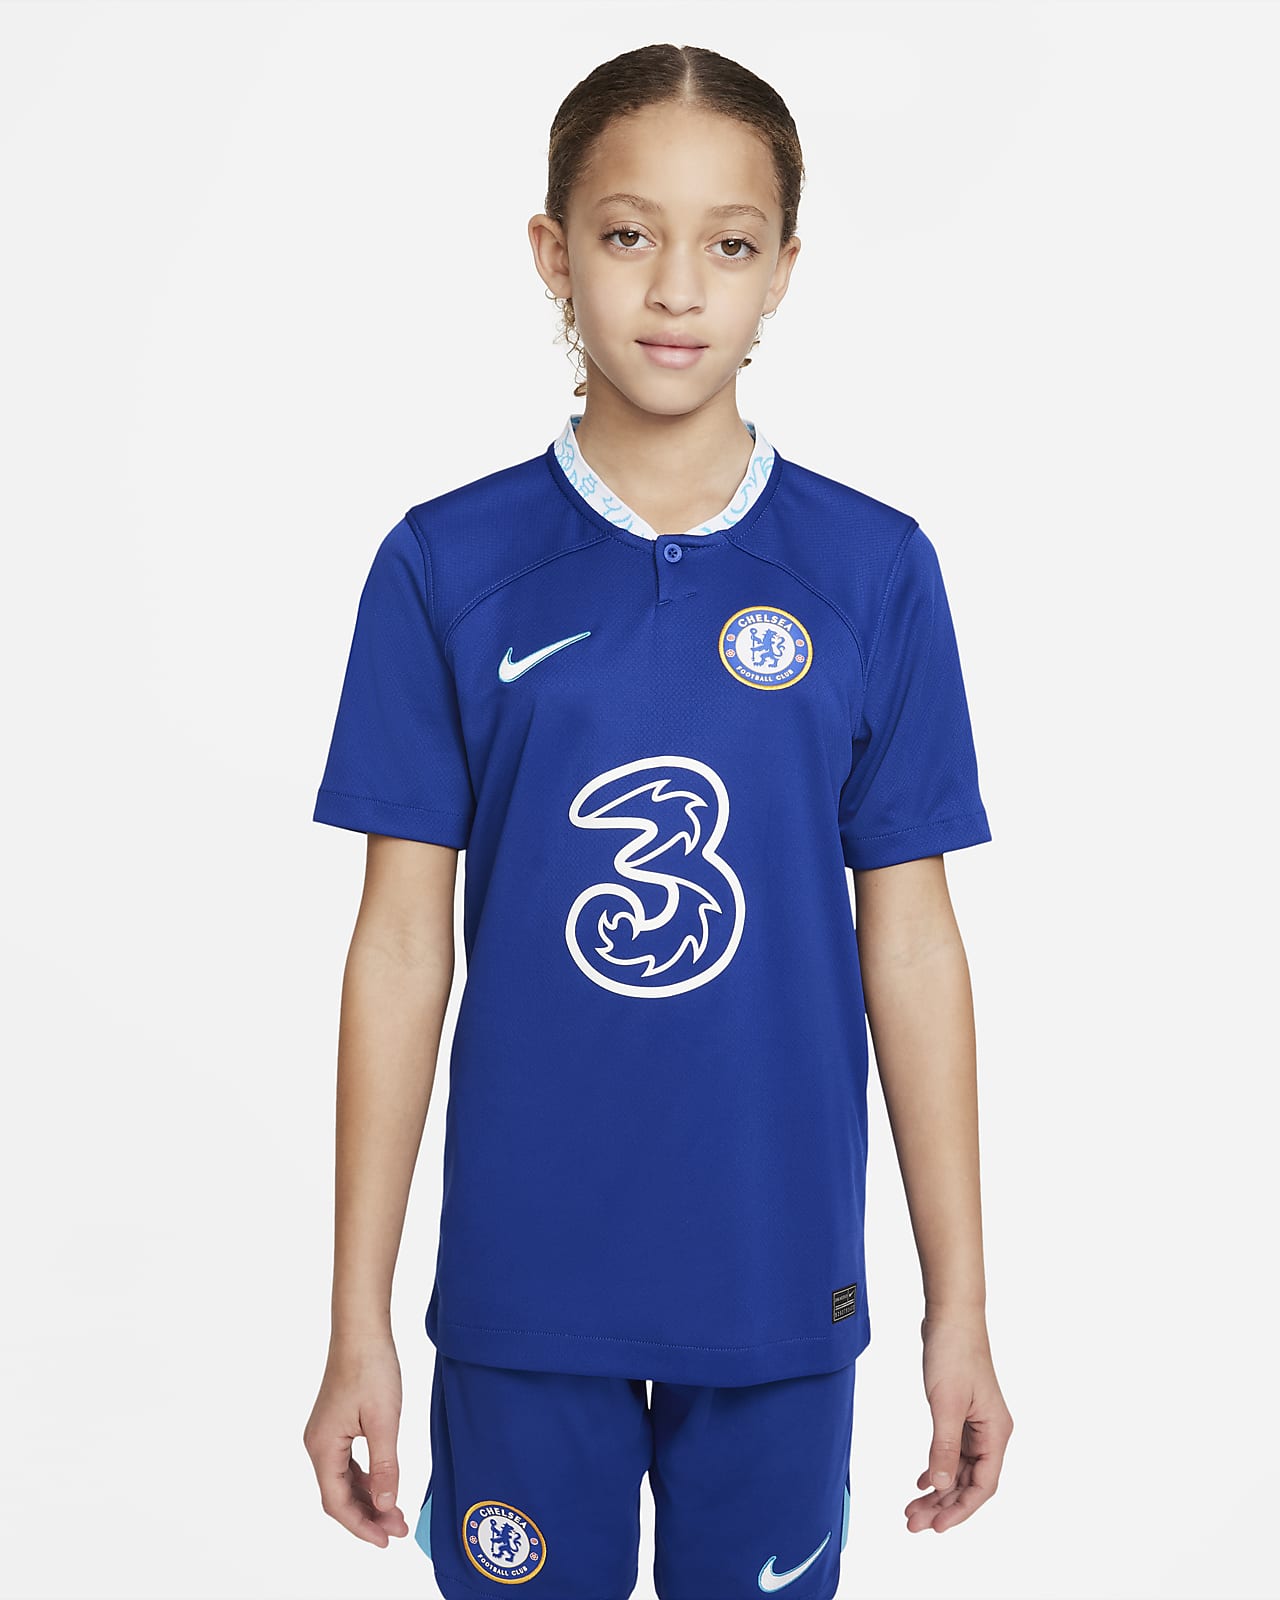 Chelsea FC 2022/23 Stadium Thuis Nike Dri-FIT voetbalshirt voor kids